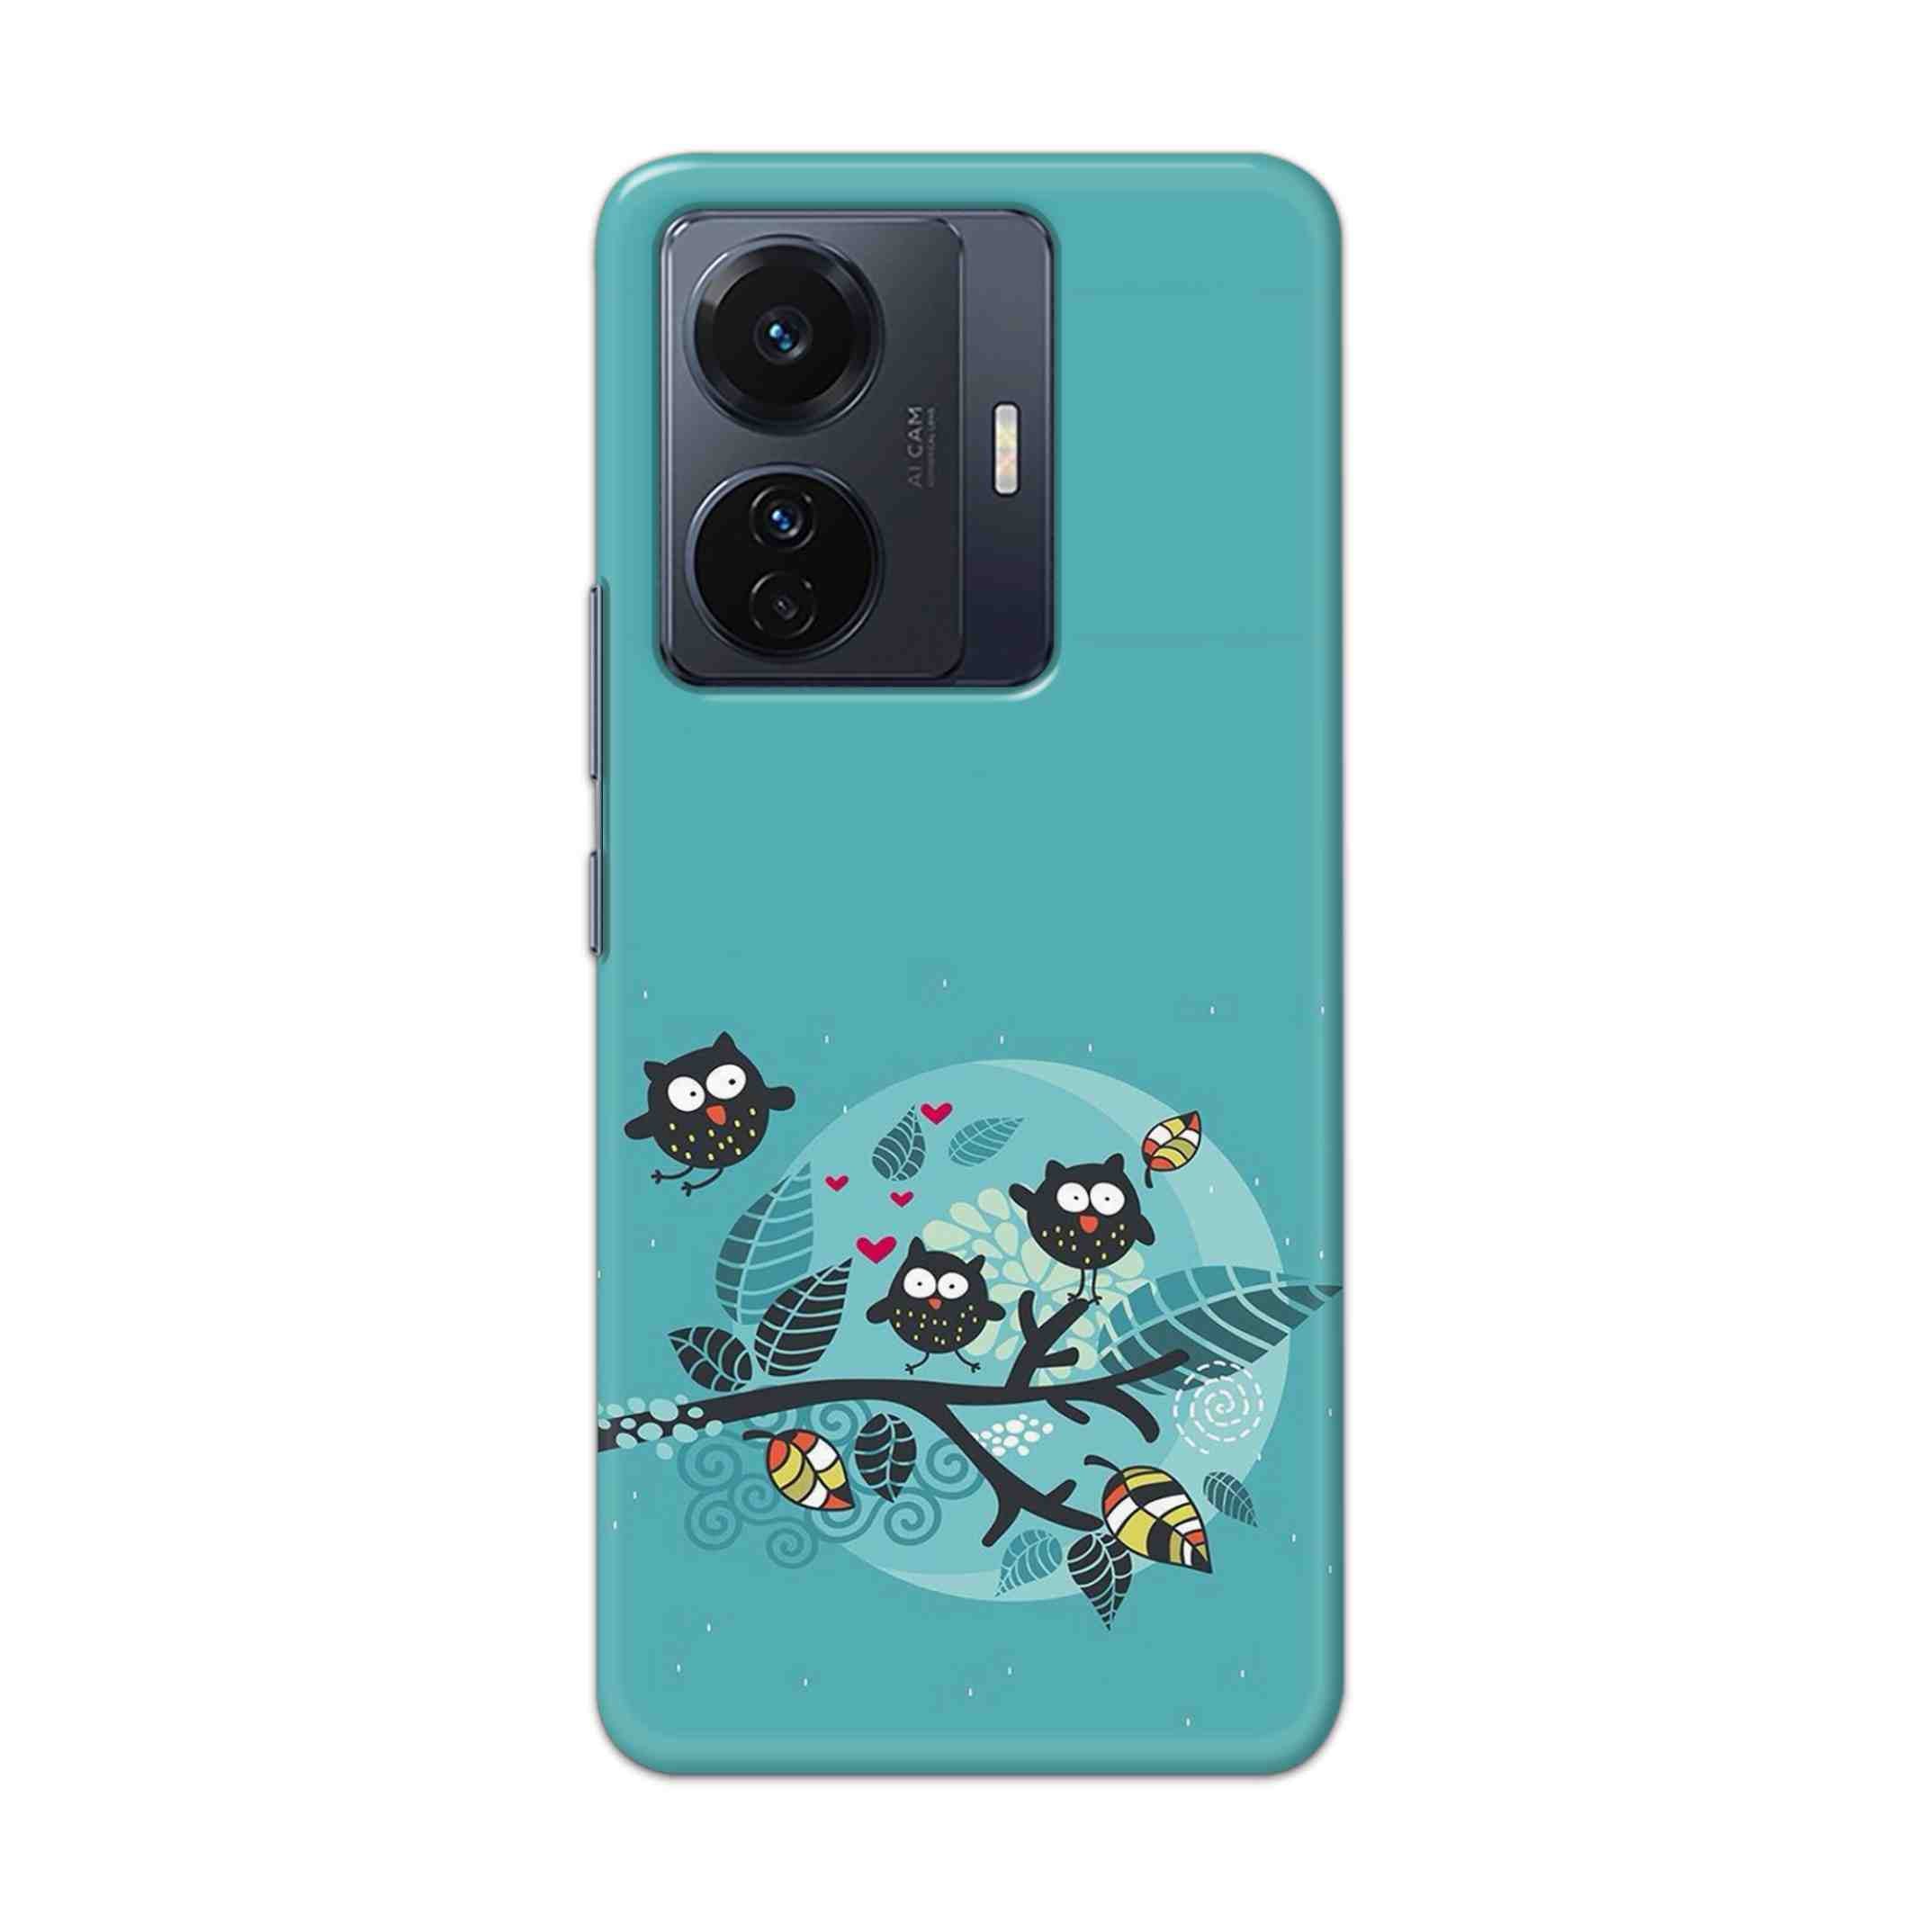 Buy Owl Hard Back Mobile Phone Case Cover For Vivo T1 Pro 5G Online